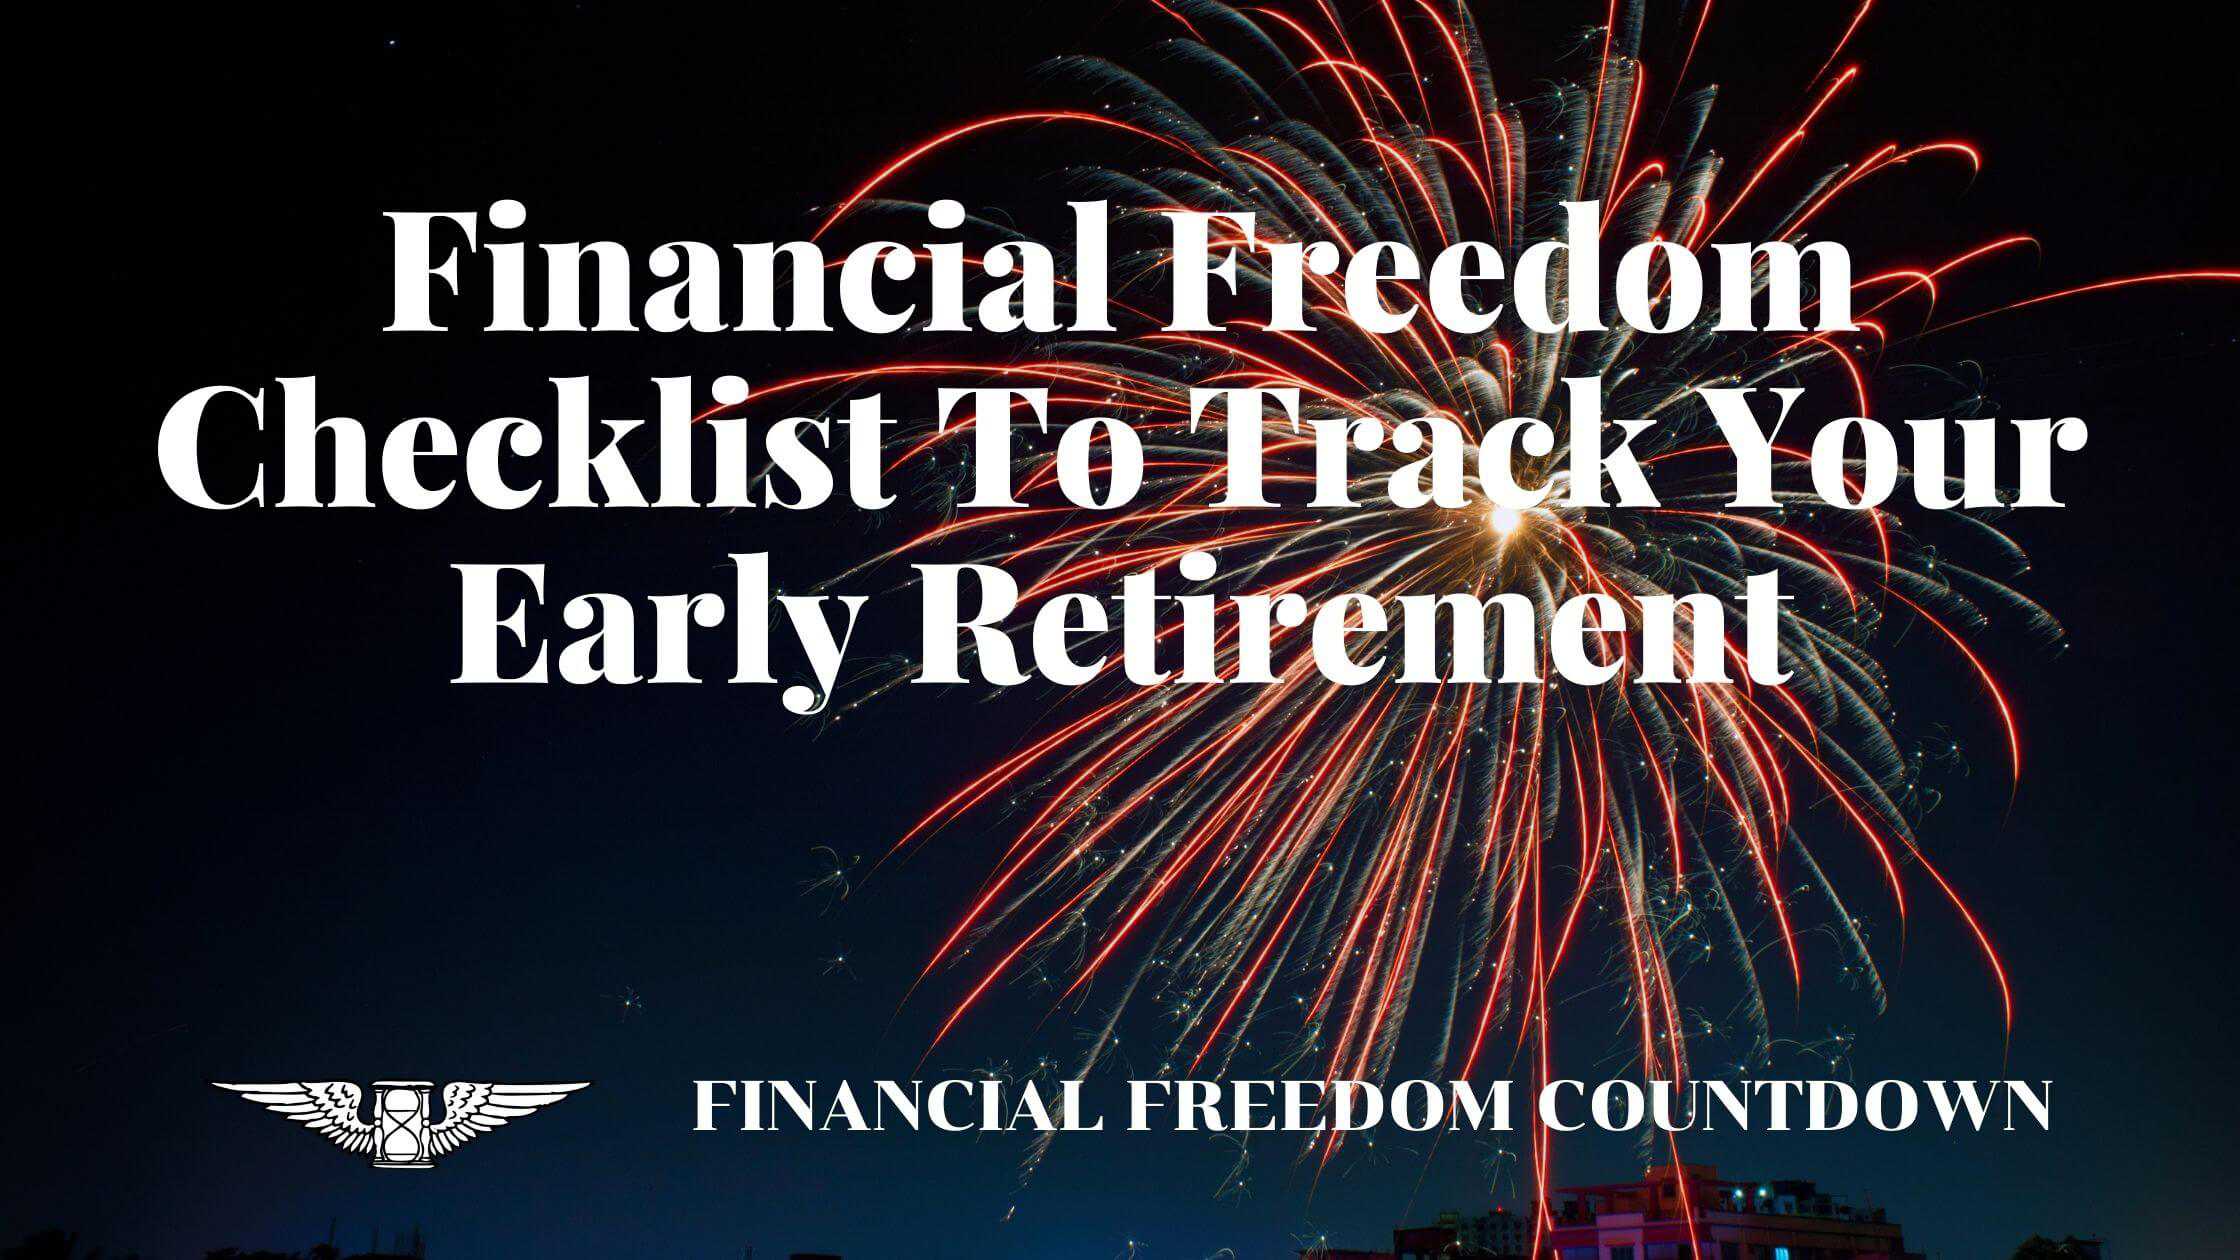 Financial Freedom Checklist